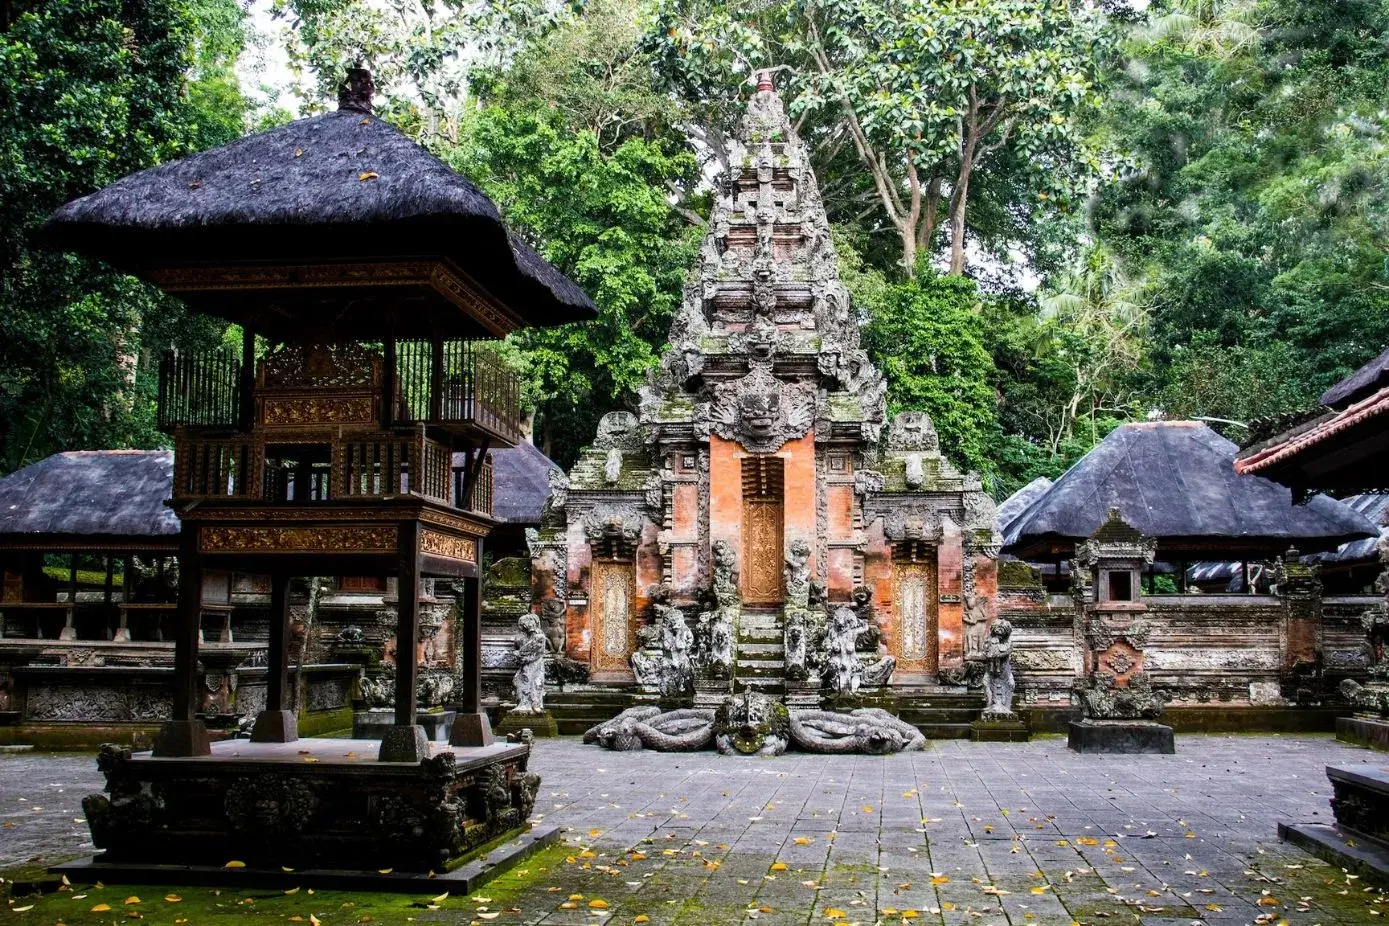 Ubud Monkey Forest Temple